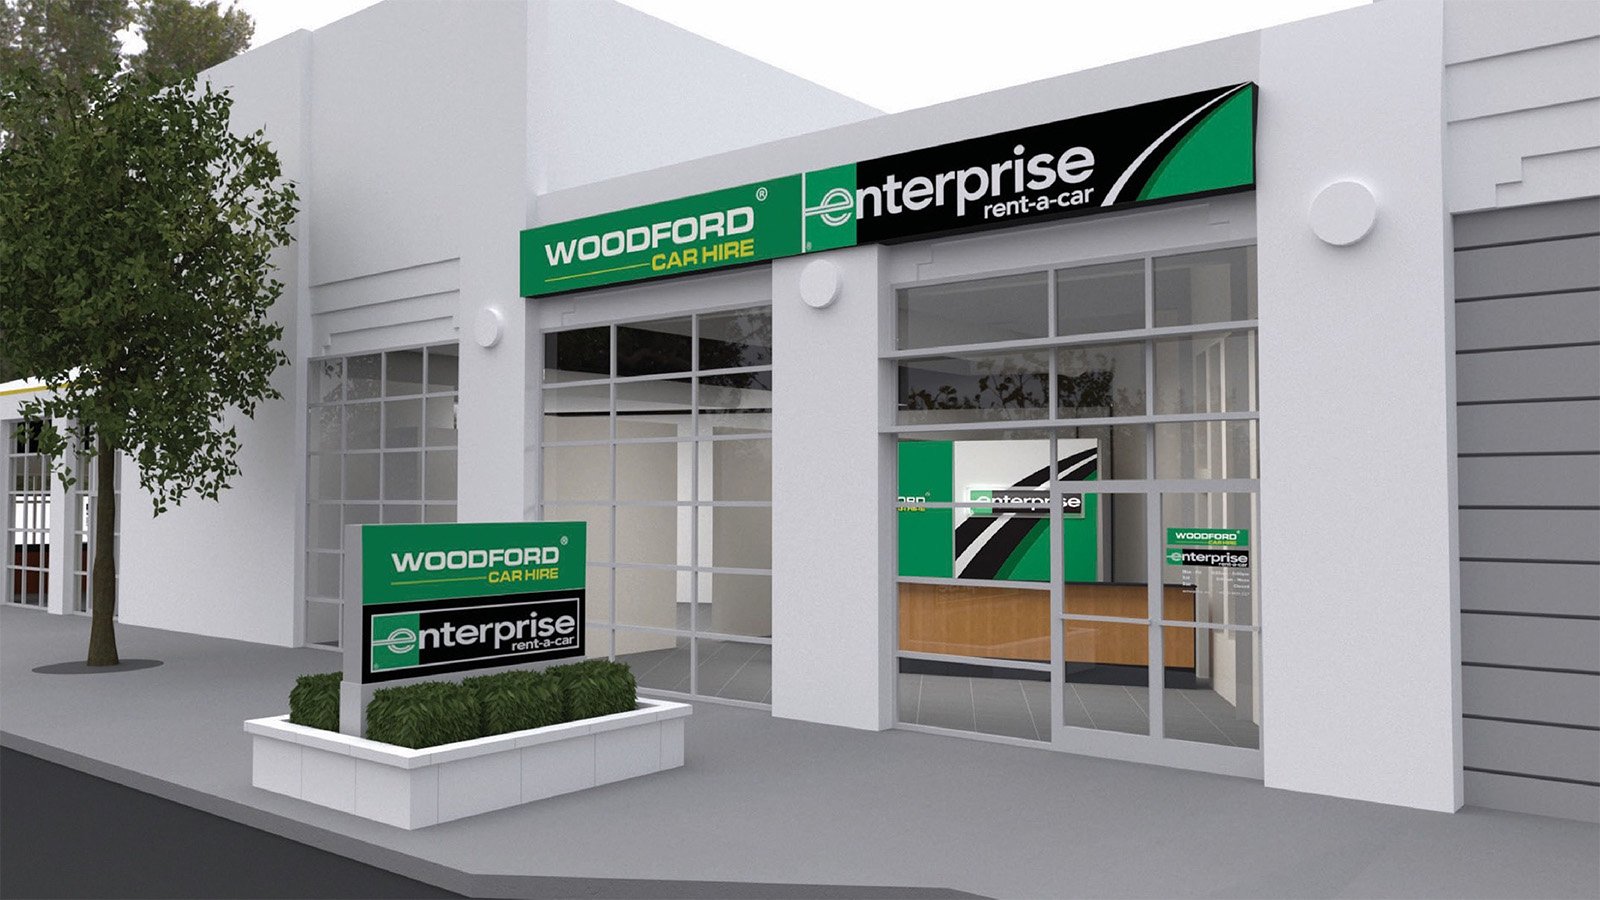 WoodfordEnterprise Holdings